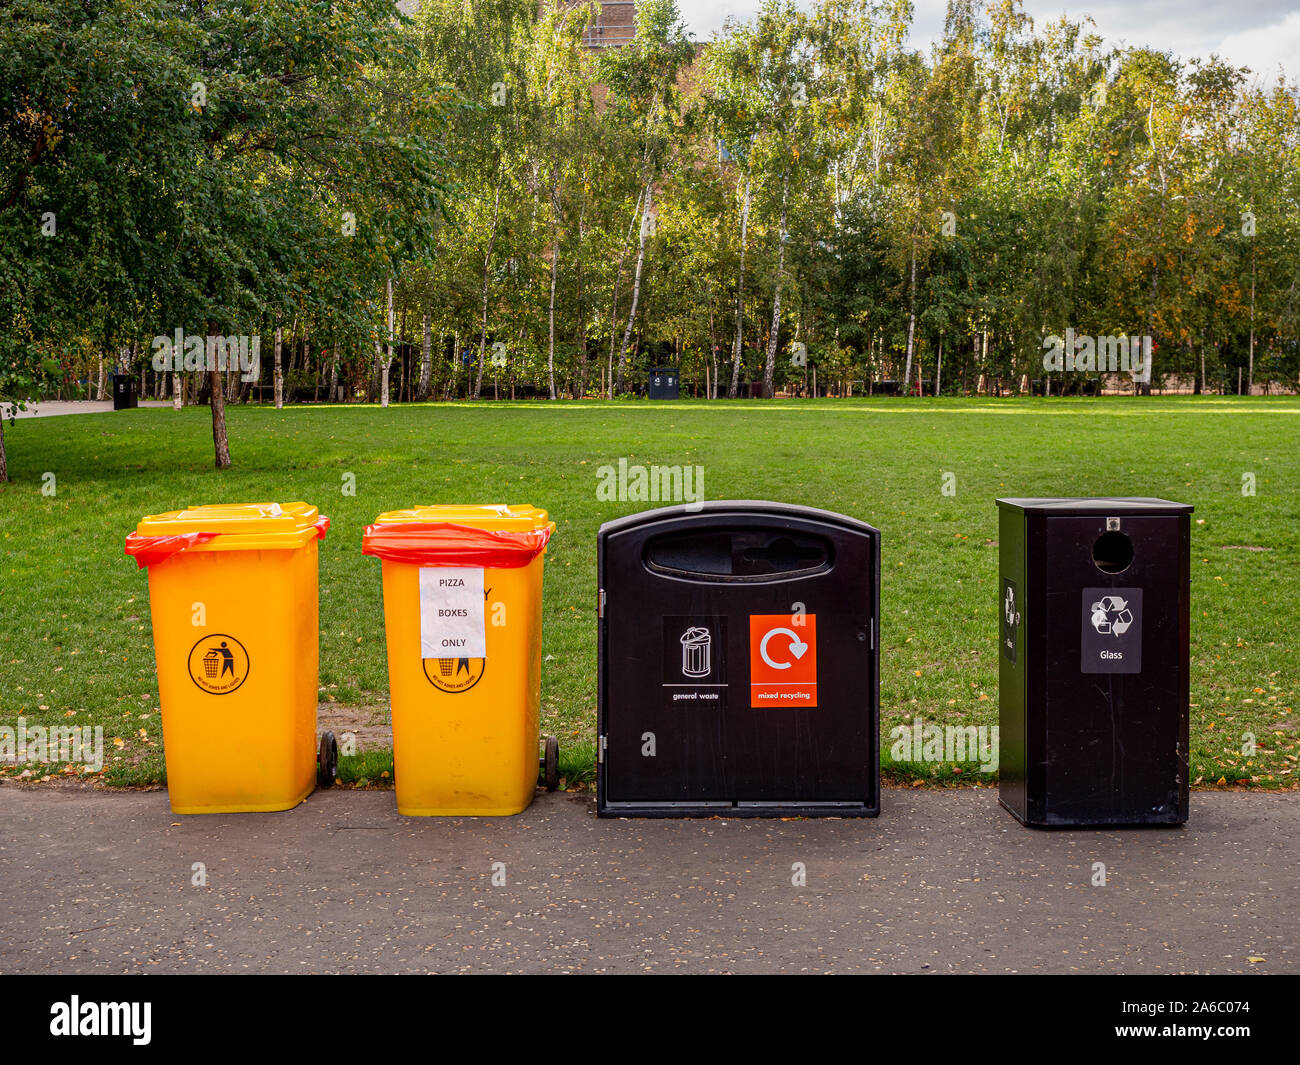 Allgemein Abfall und Recycling Bins in öffentlichen Park, UK. Stockfoto